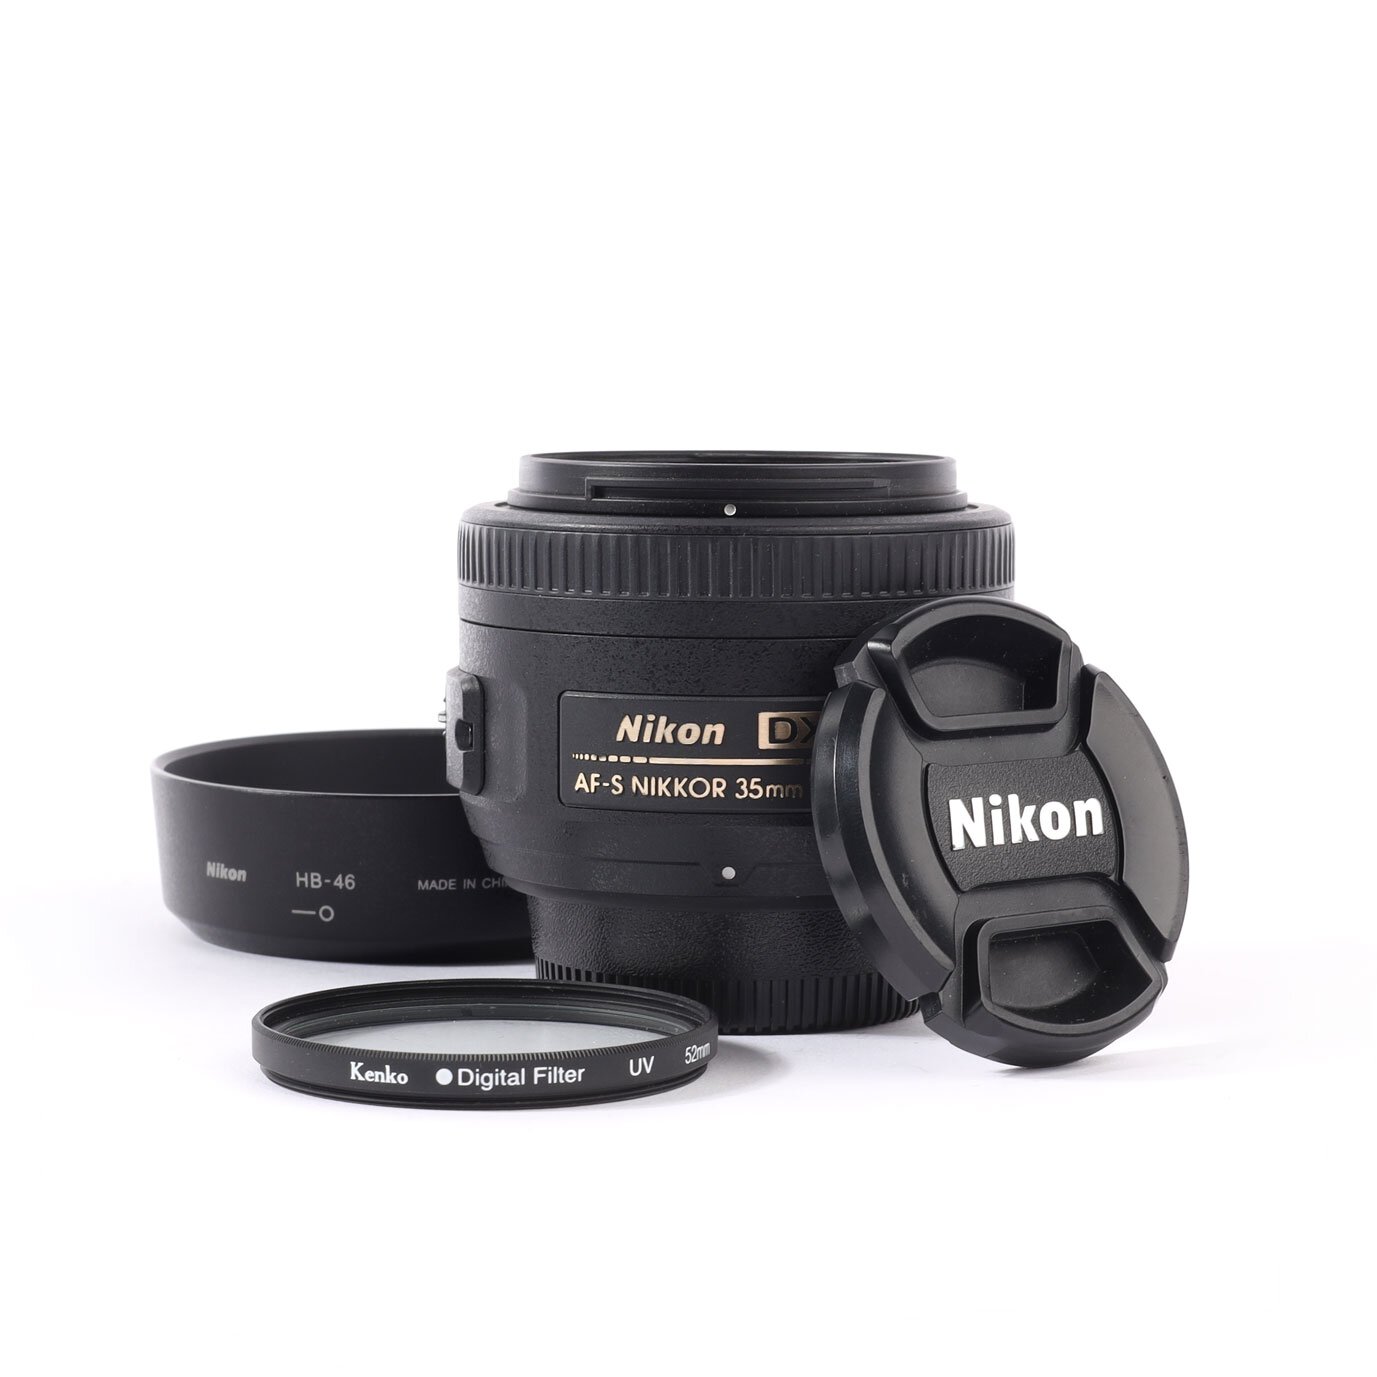 Nikon AFS Nikkor 35mm 1.8 G DX